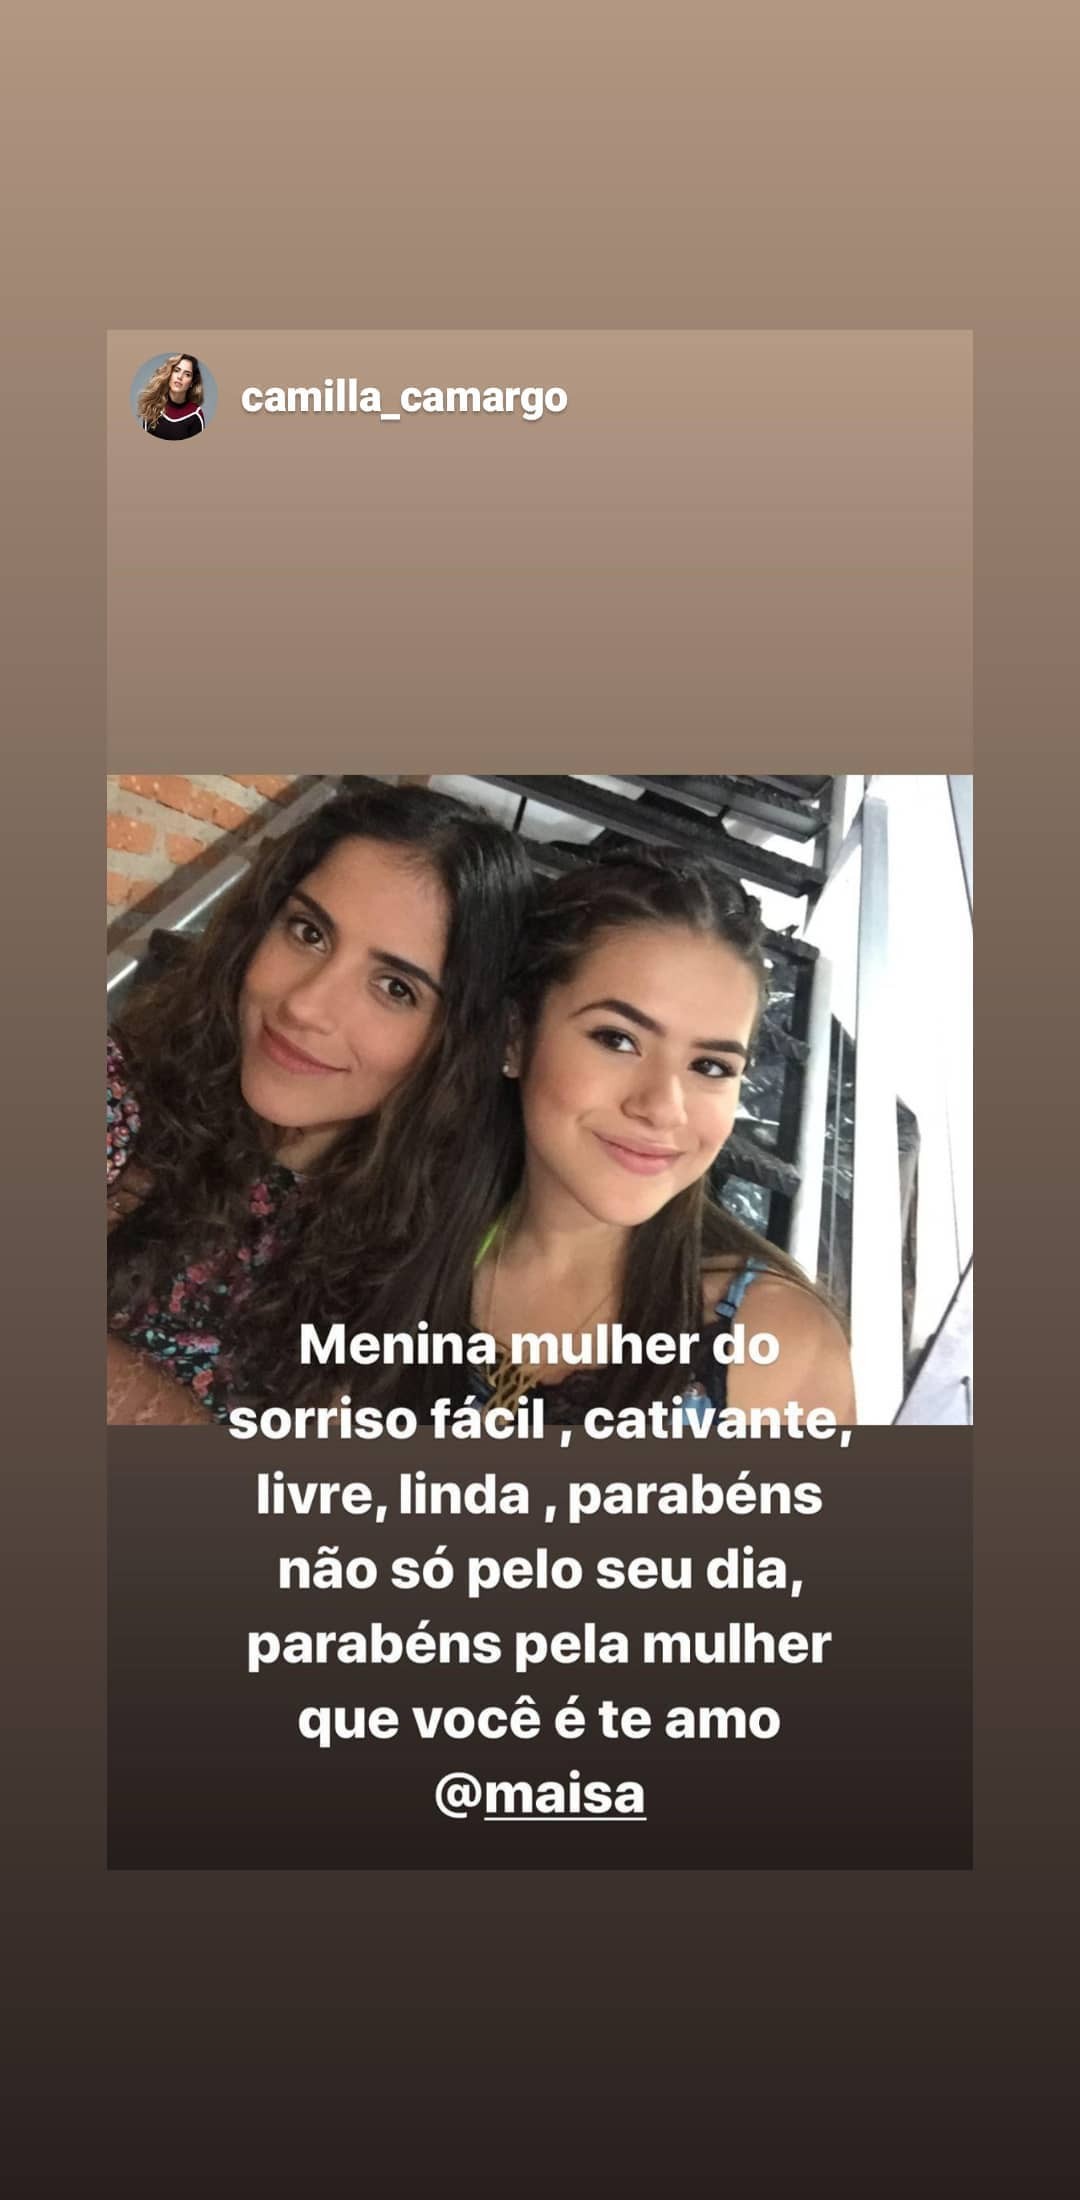 Camila Camargo prestou homenagem para Maisa (Foto: reprodução/instagram)